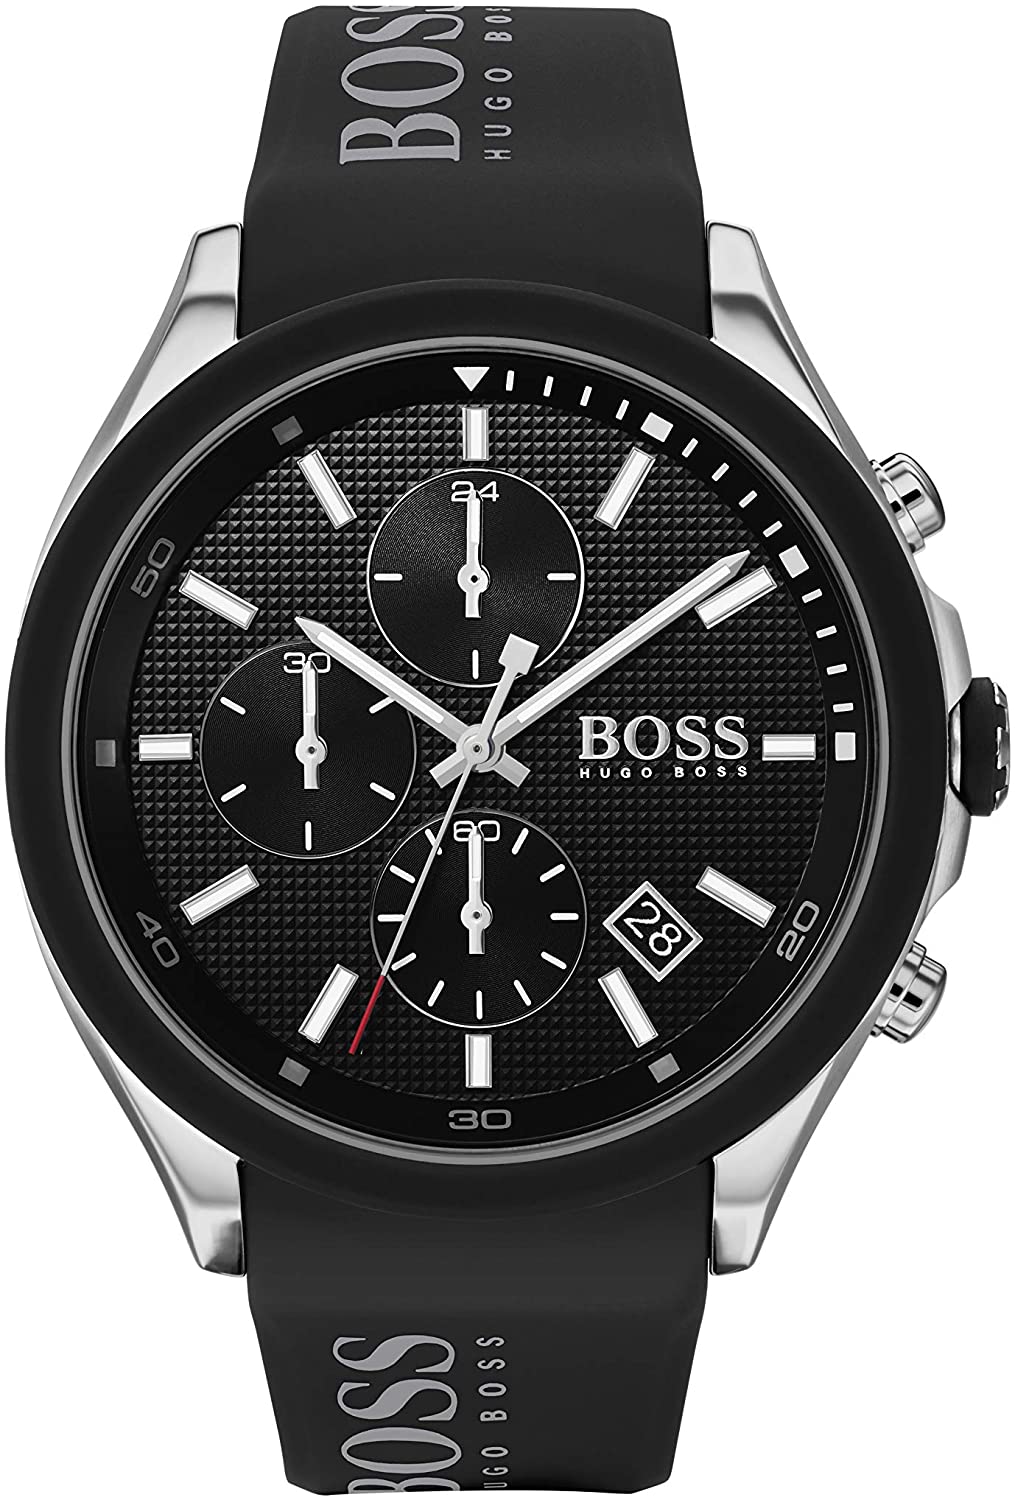 Reloj Hugo Boss Análogo HB1513716 Ironmen.cl